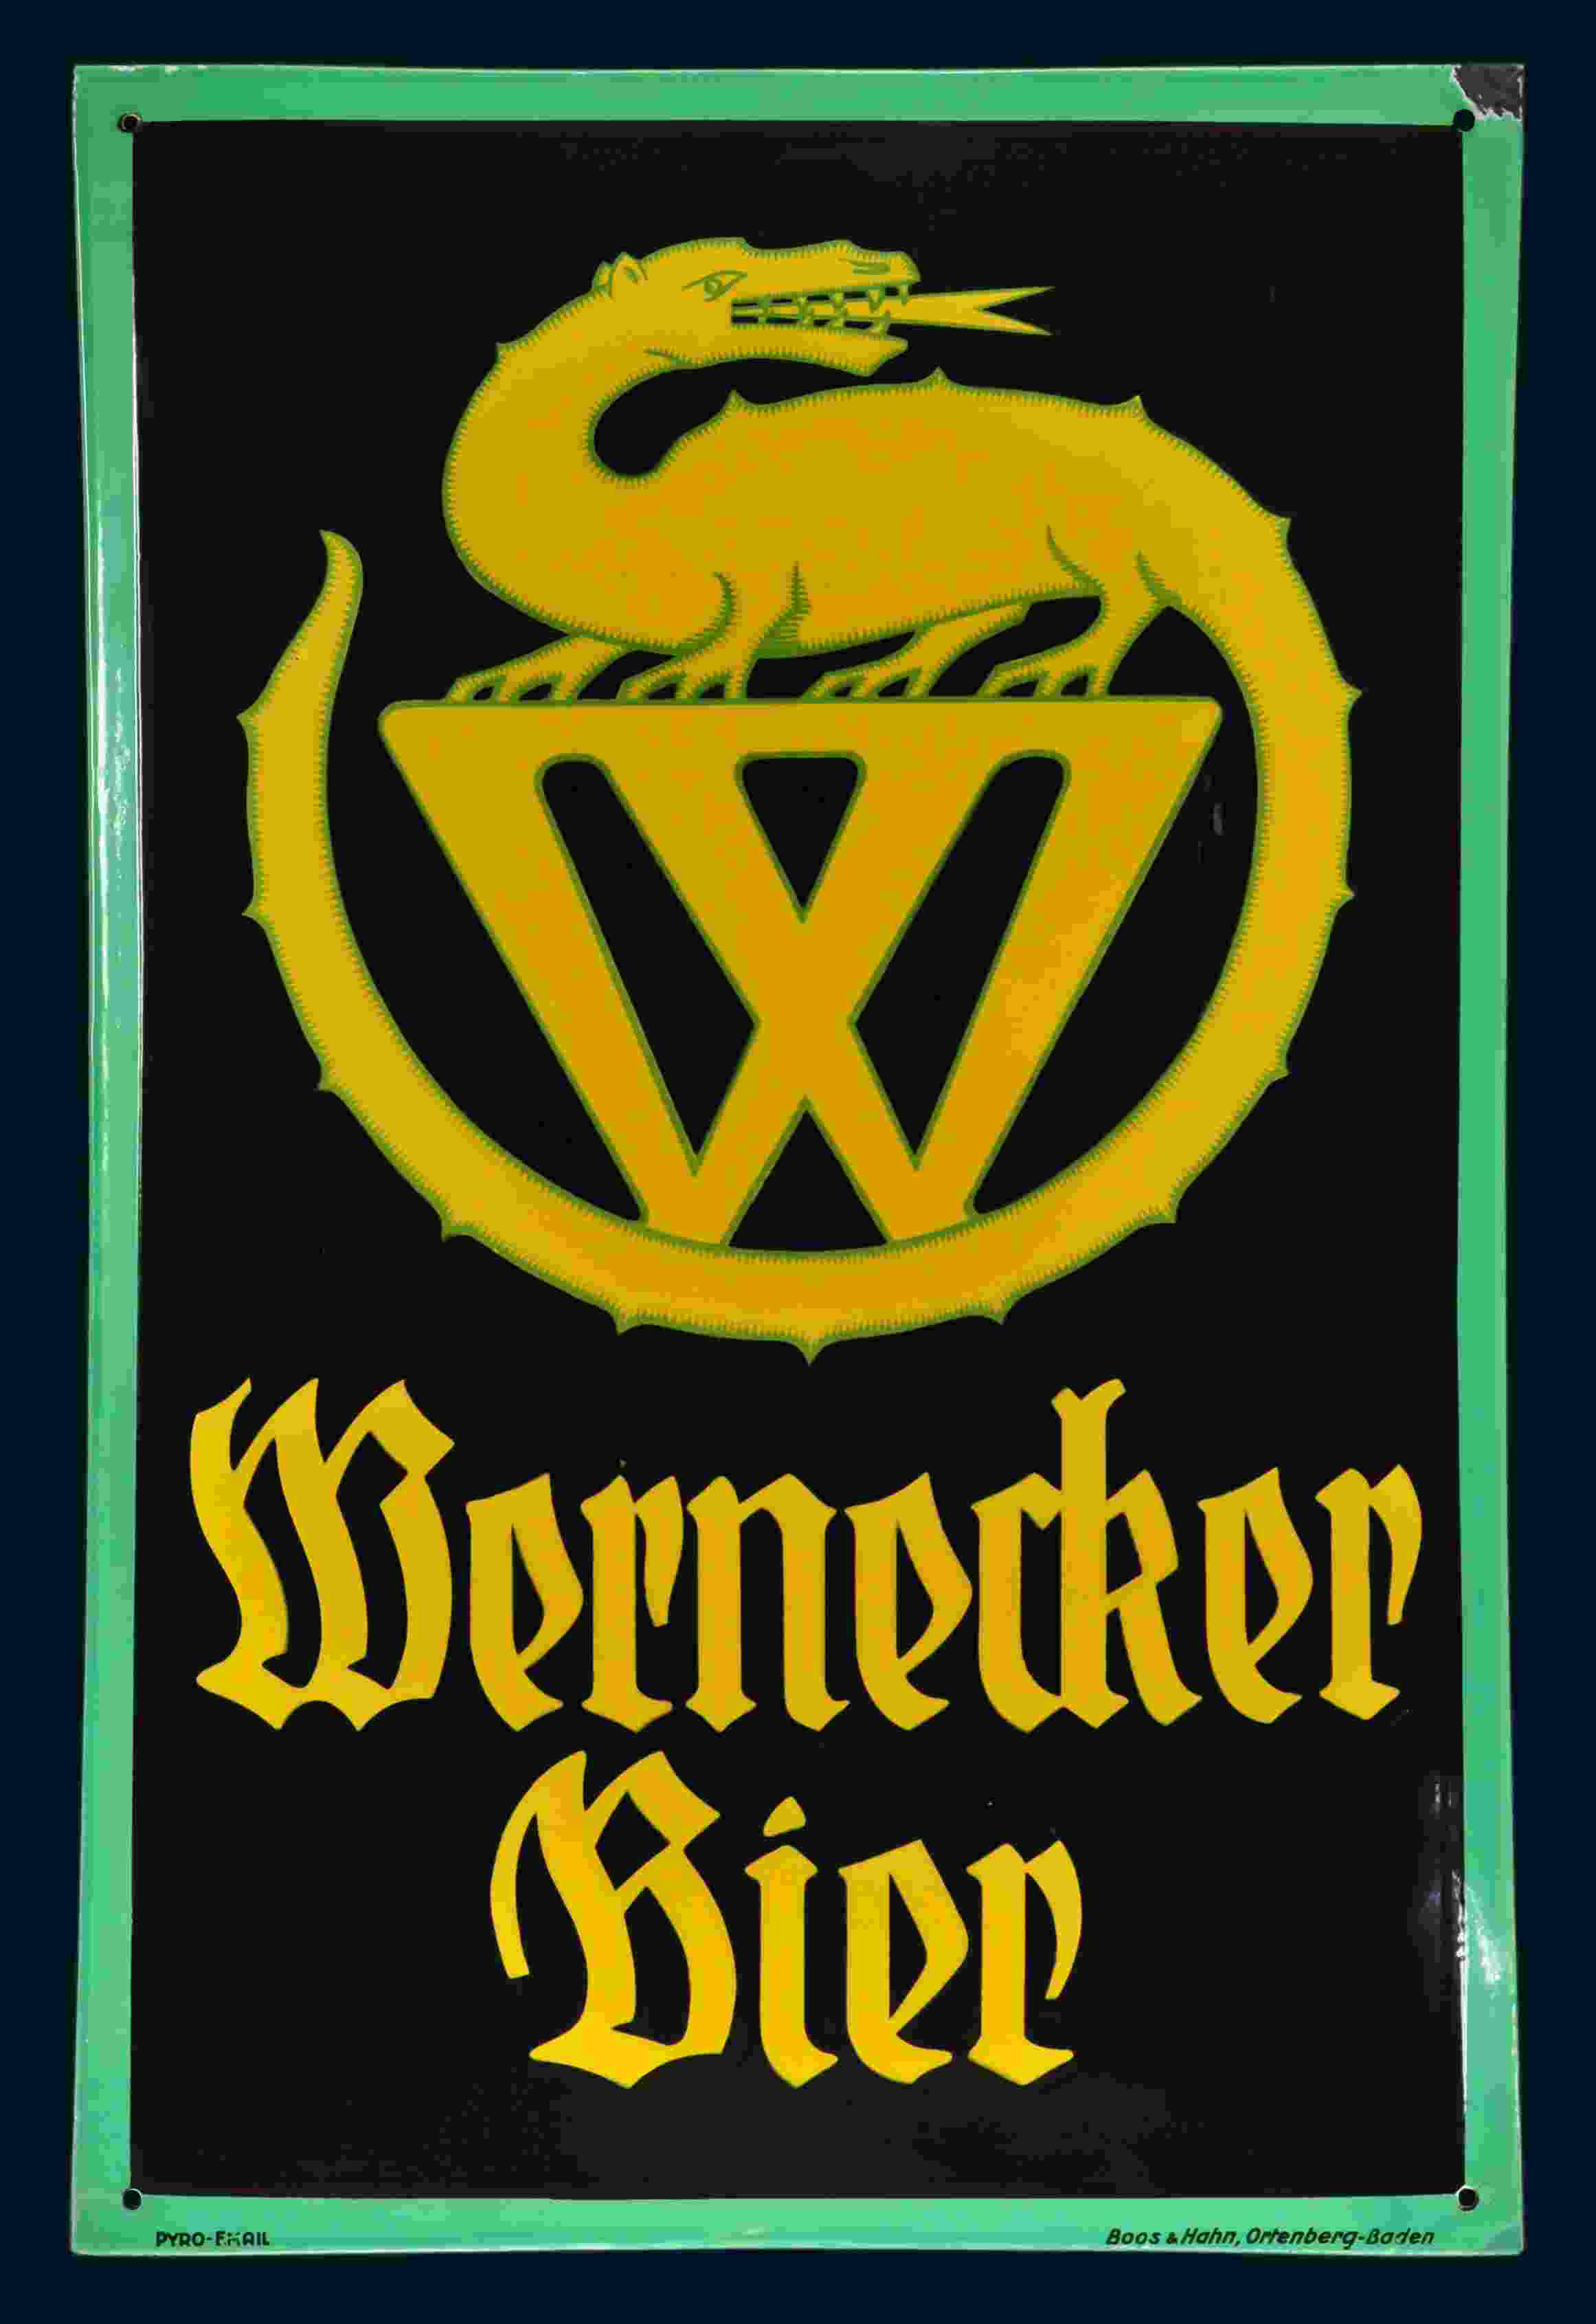 Wernecker Bier 